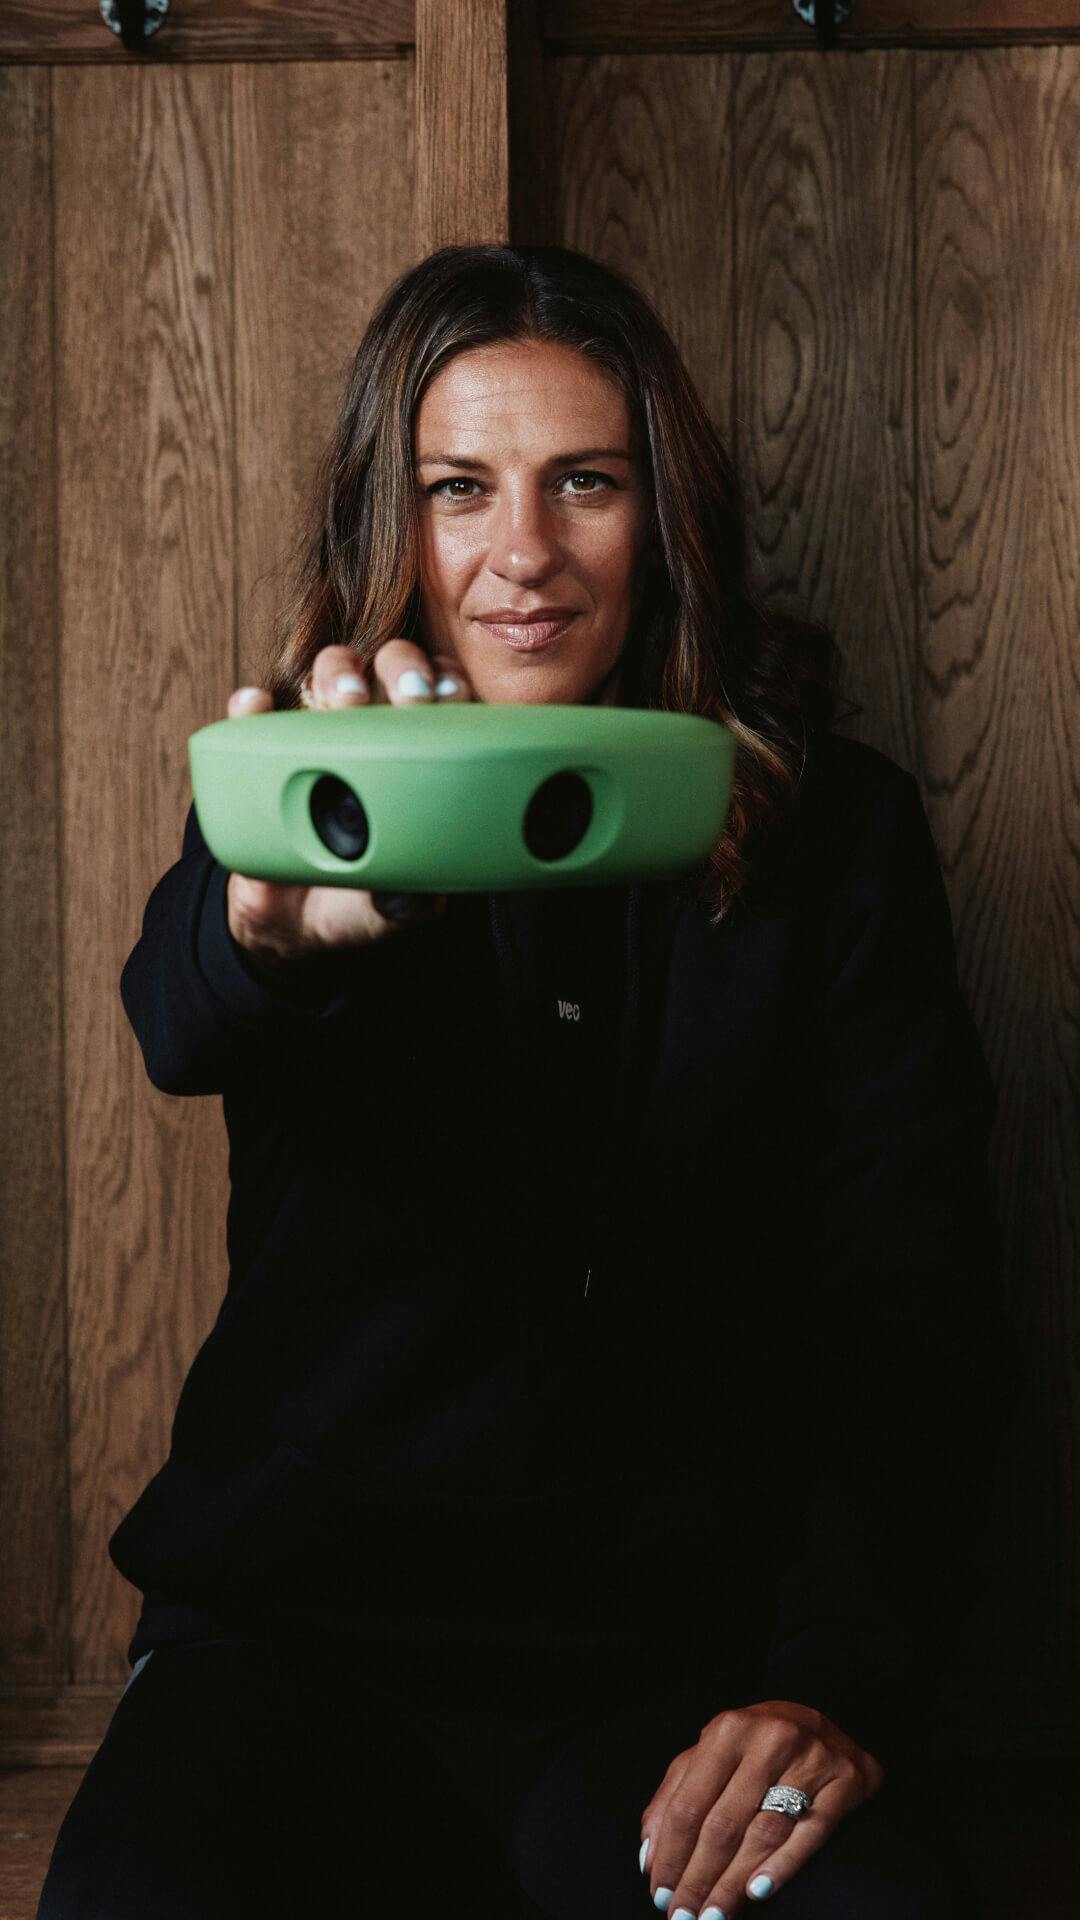 Carli Lloyd posing with a soccer camera